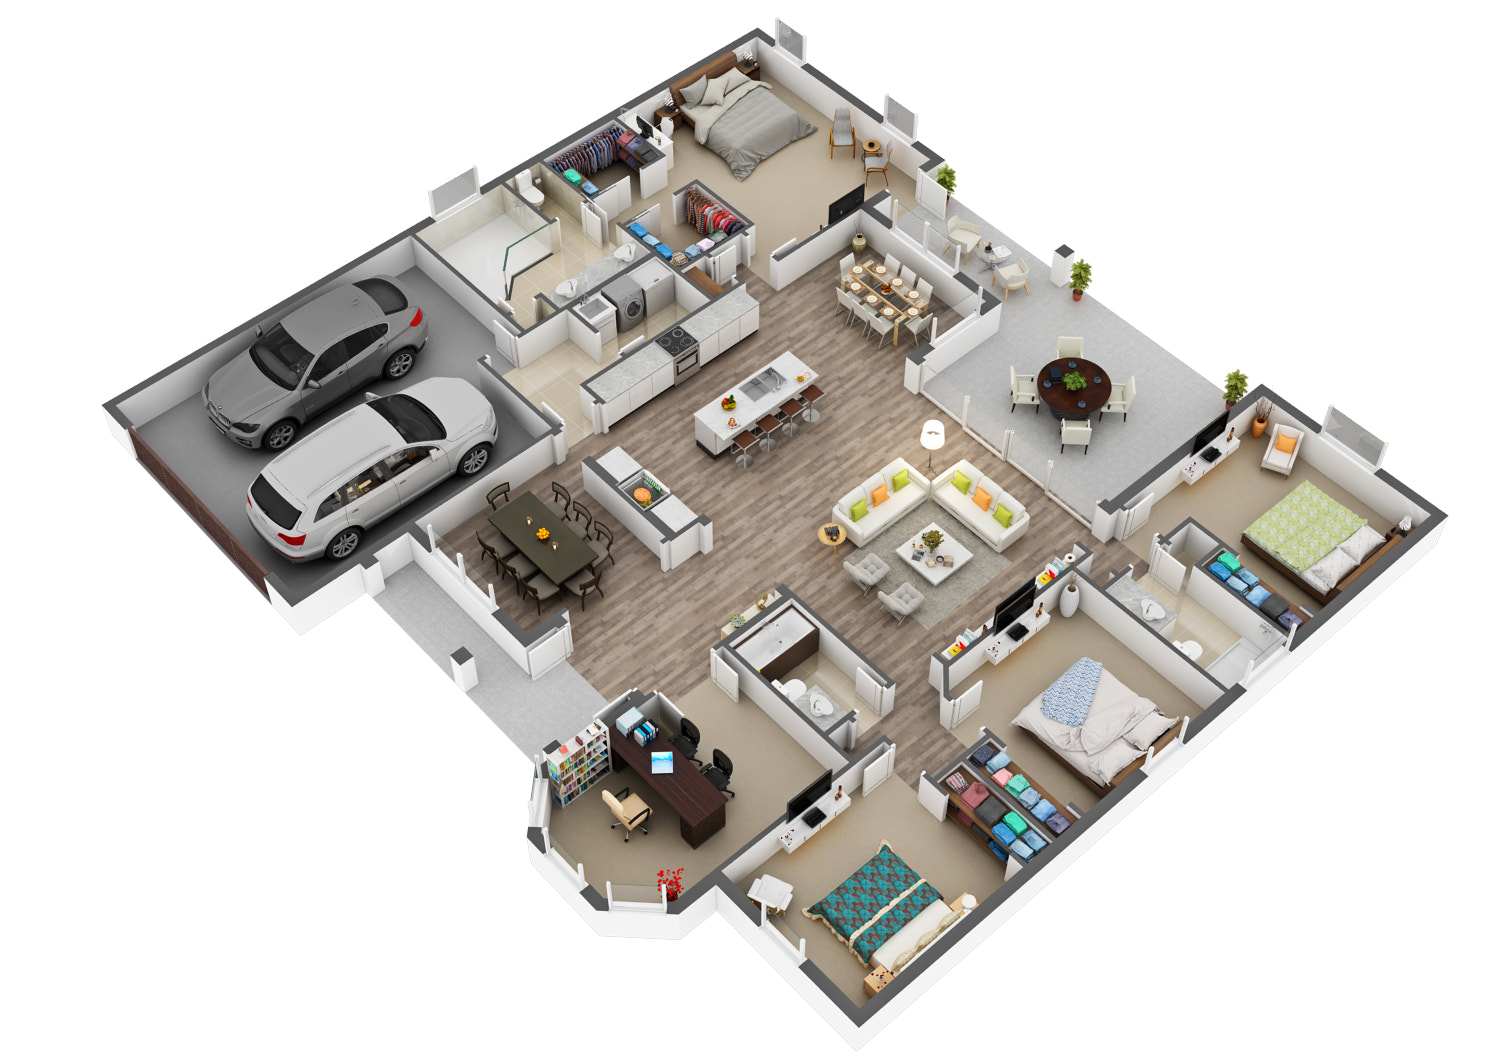 3D Floor Plan Rendering And Design Creator Company